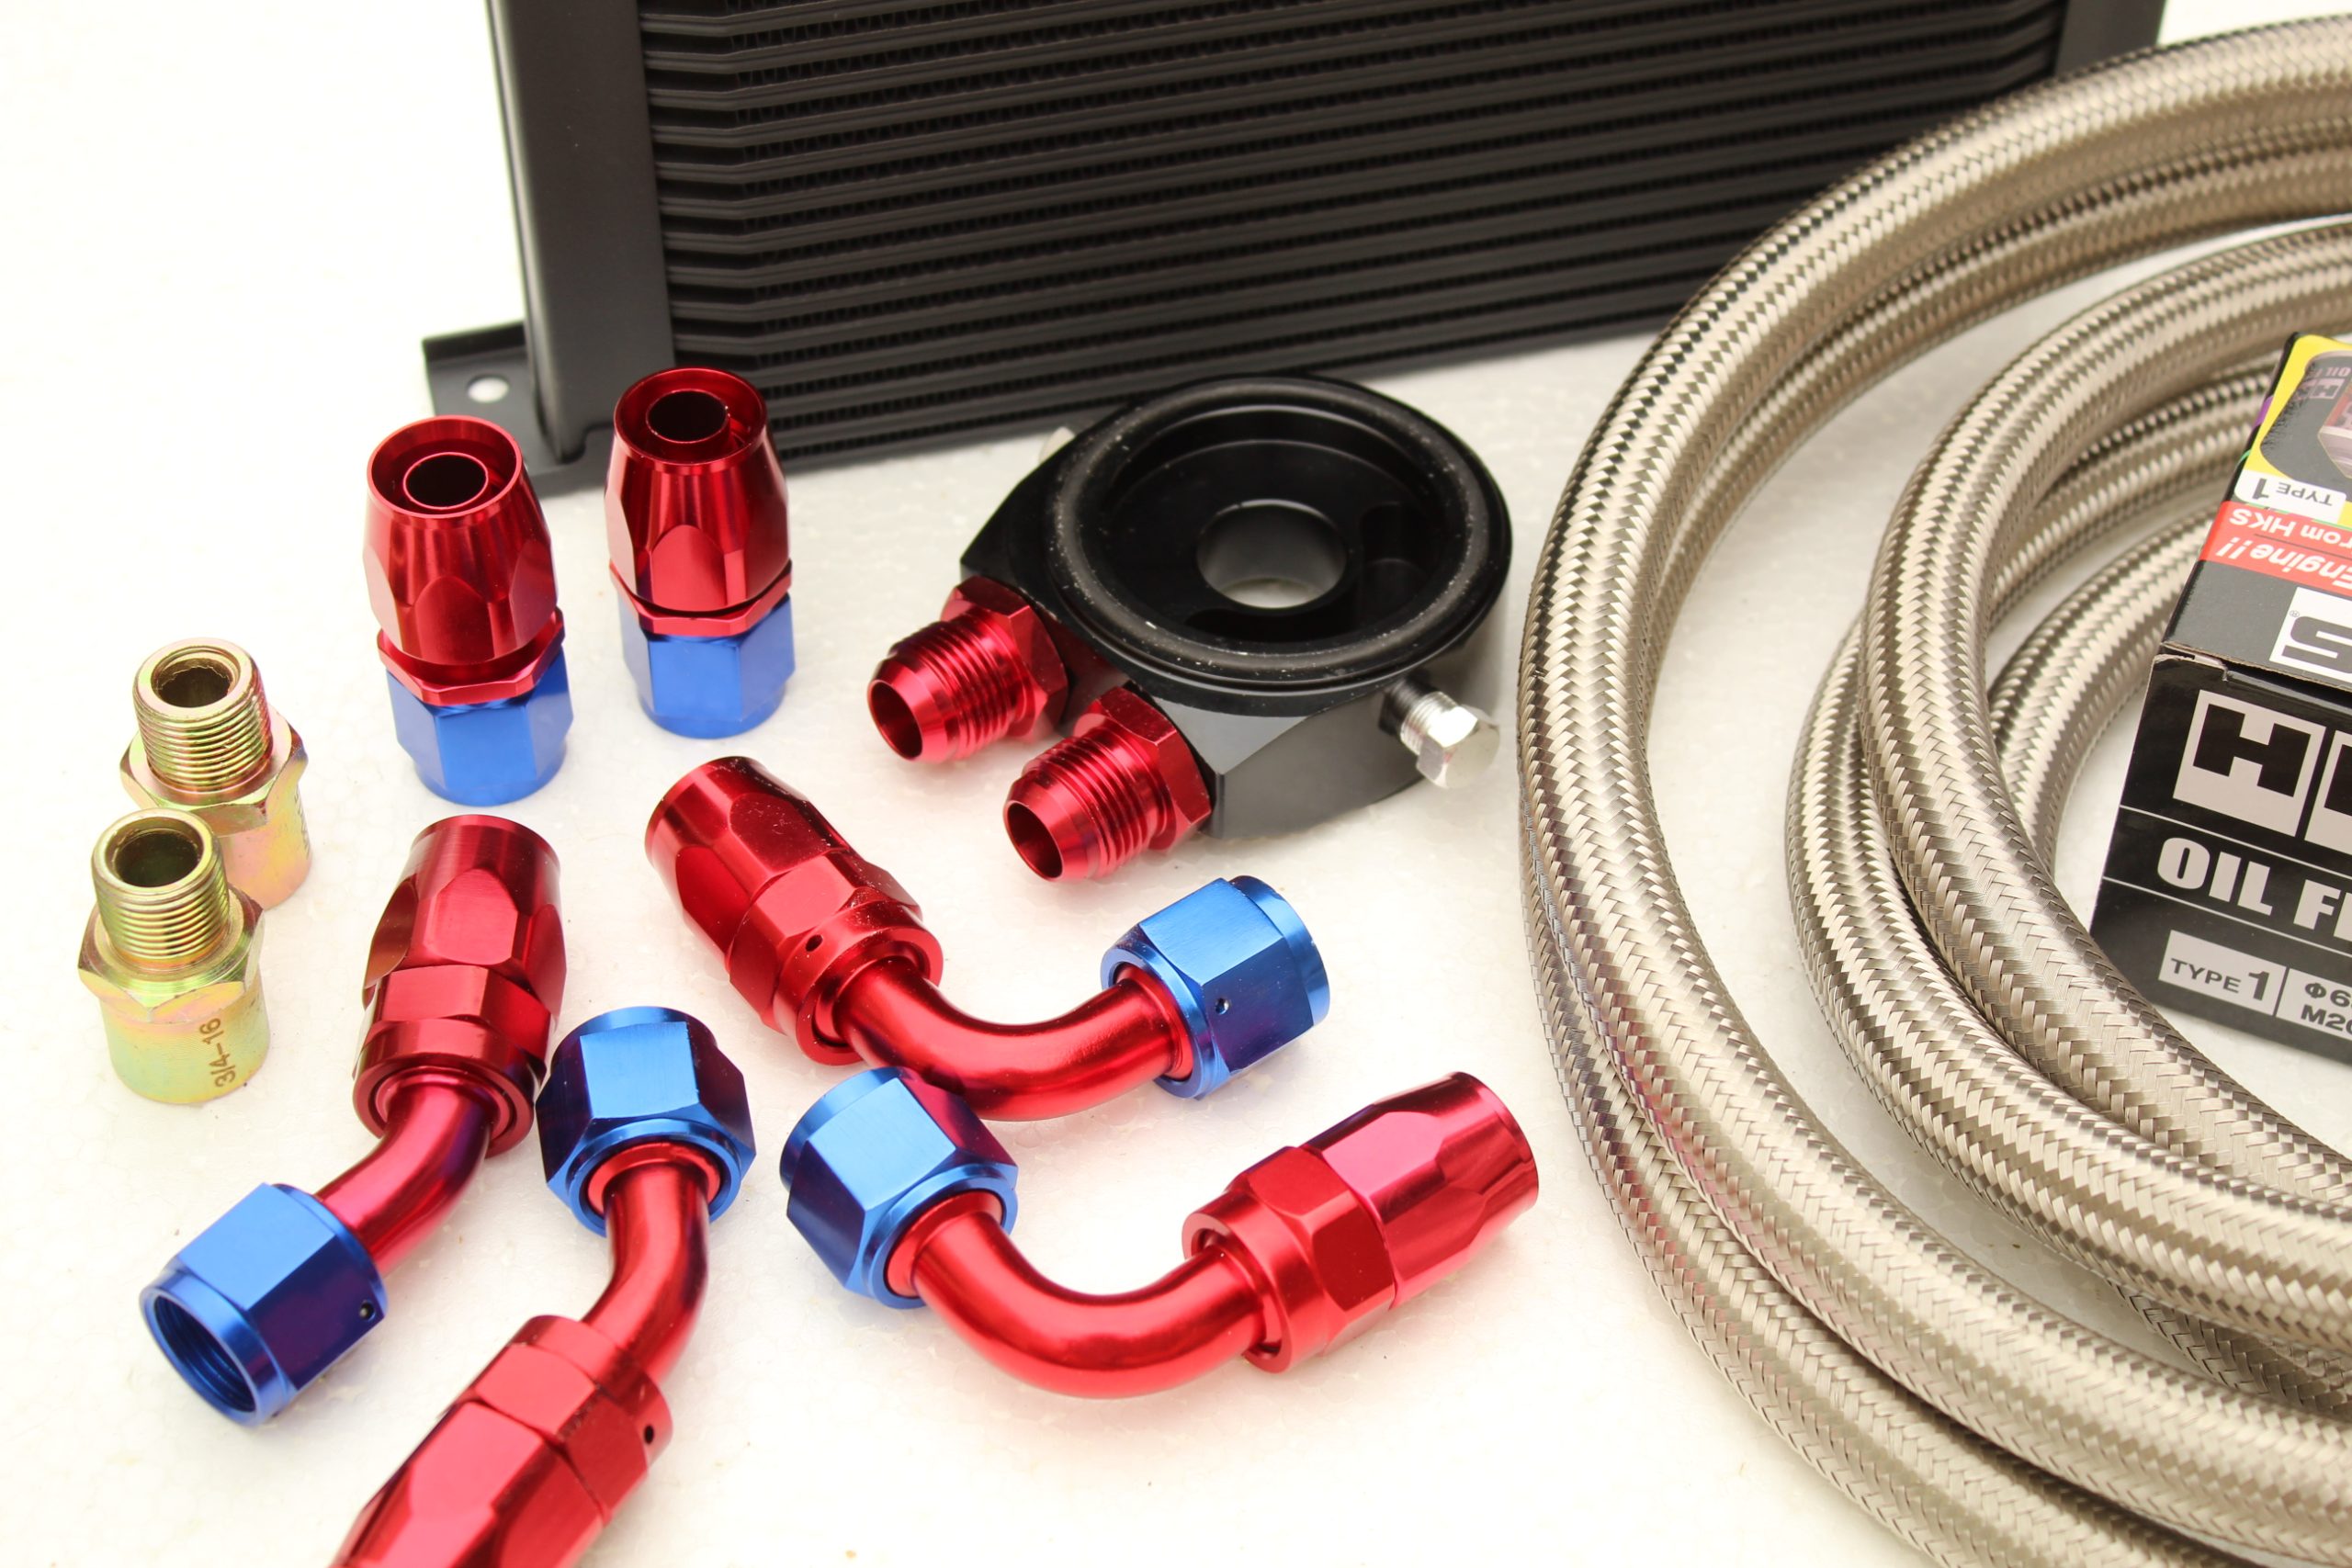 Performance Oil Cooler Kit + HKS Filter for Nissan S13,S14,S15 SR20DET, 200sx